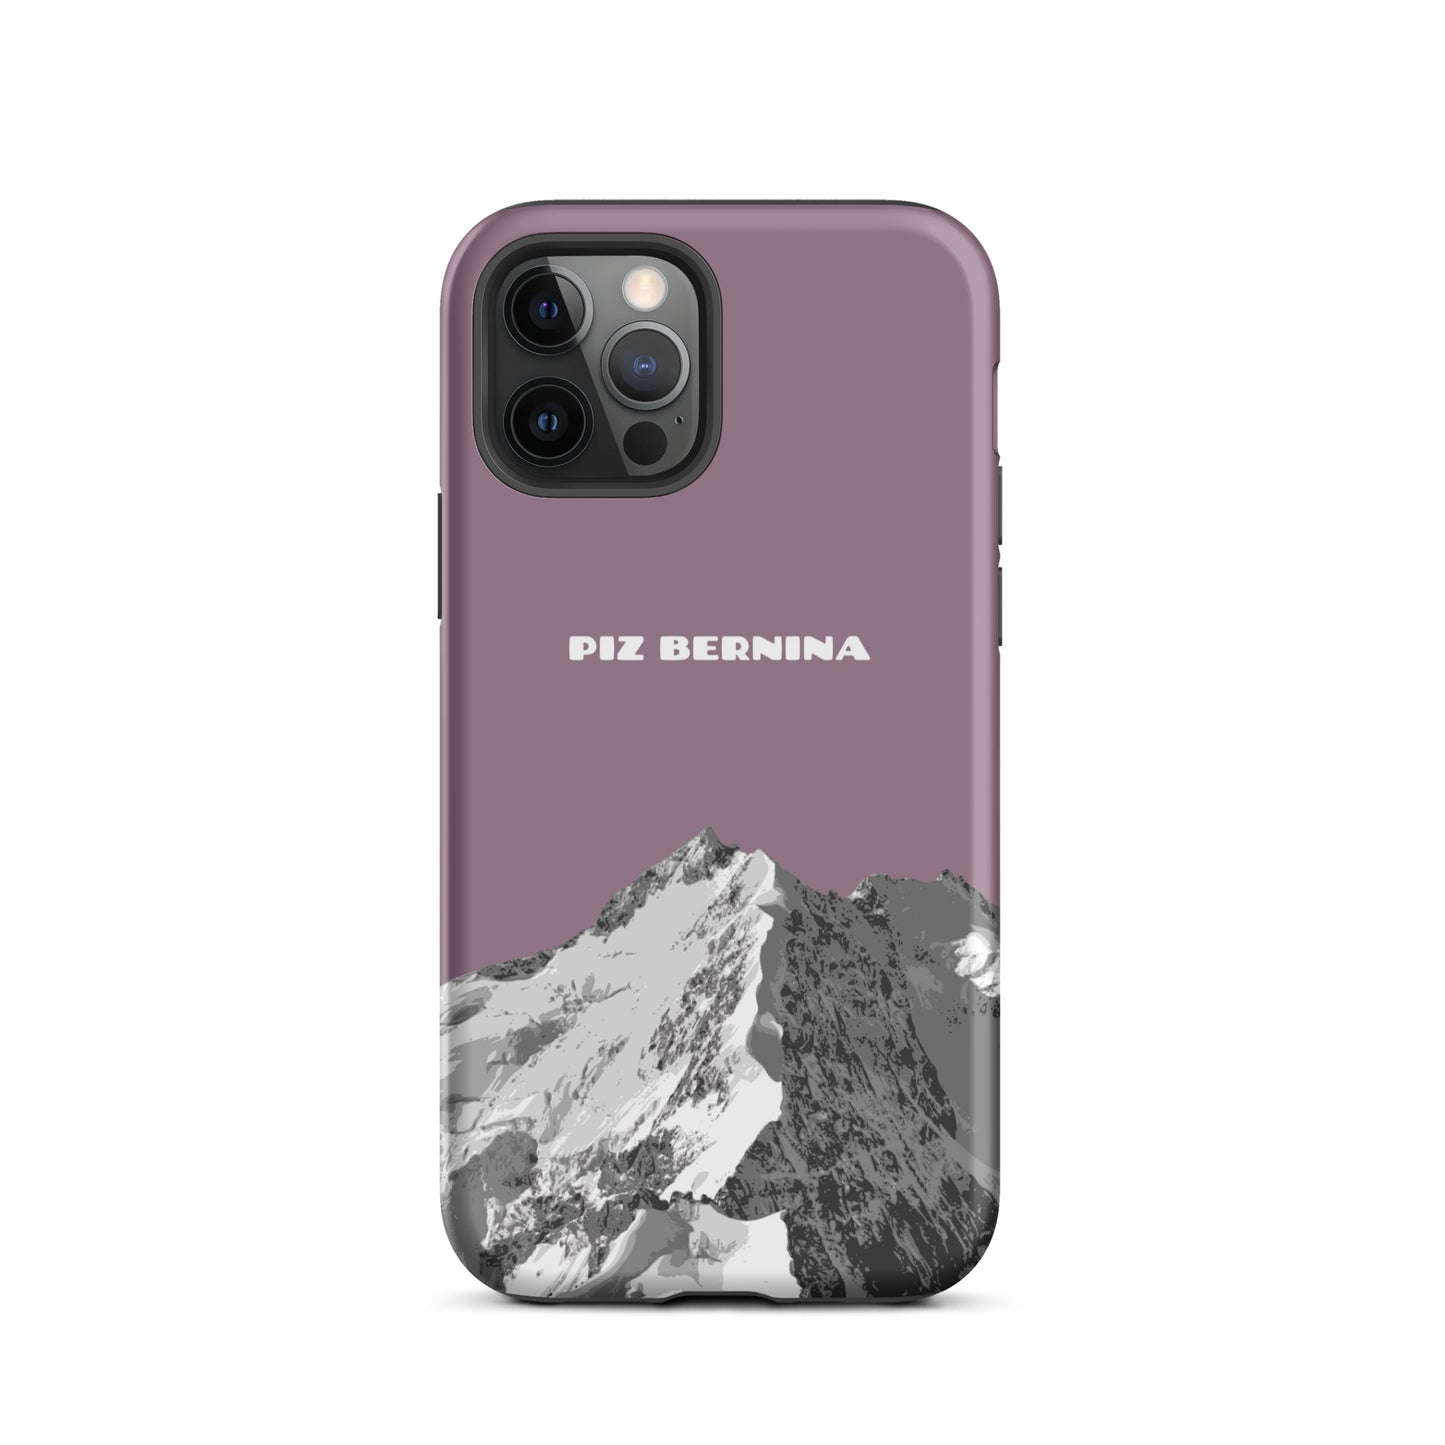 Hülle für das iPhone 12 Pro von Apple in der Farbe Pastellviolett, dass den Piz Bernina in Graubünden zeigt.